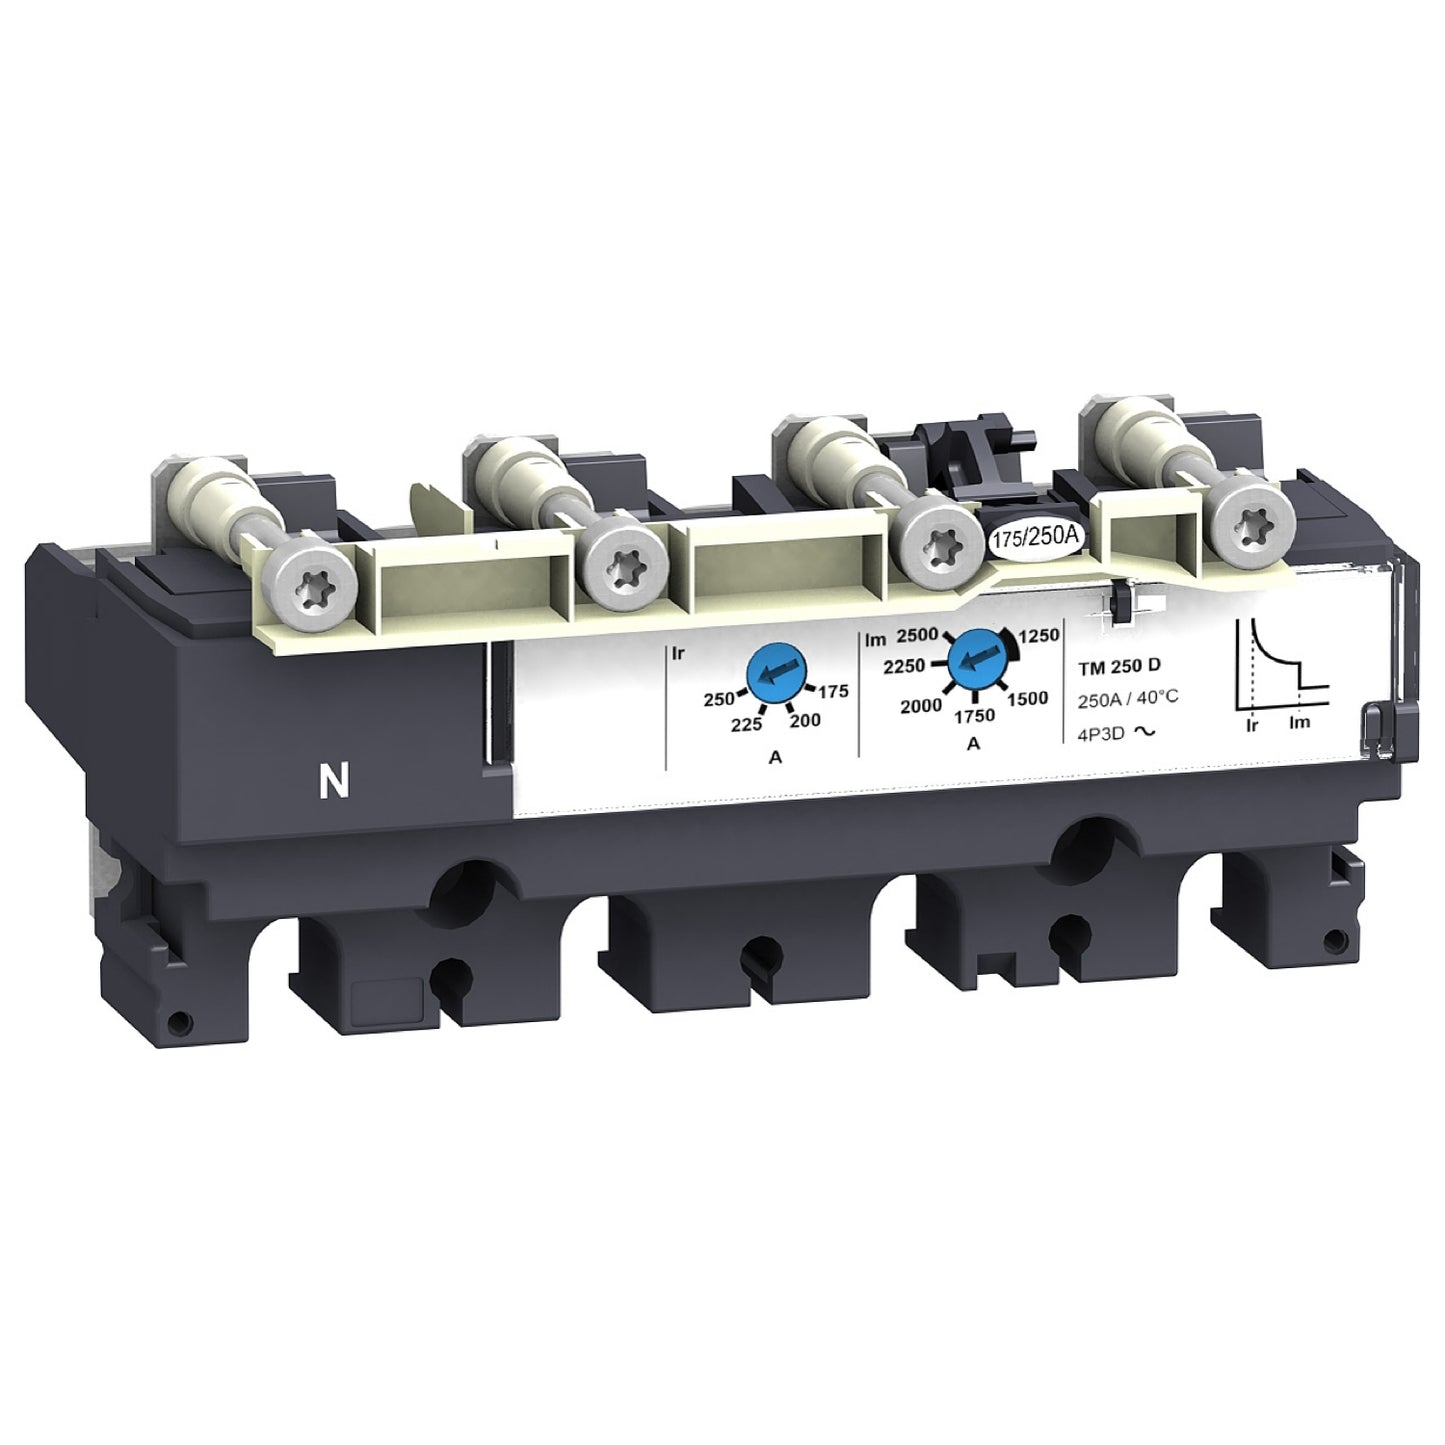 LV430440 Trip unit TM160D for NSX160 circuit breakers